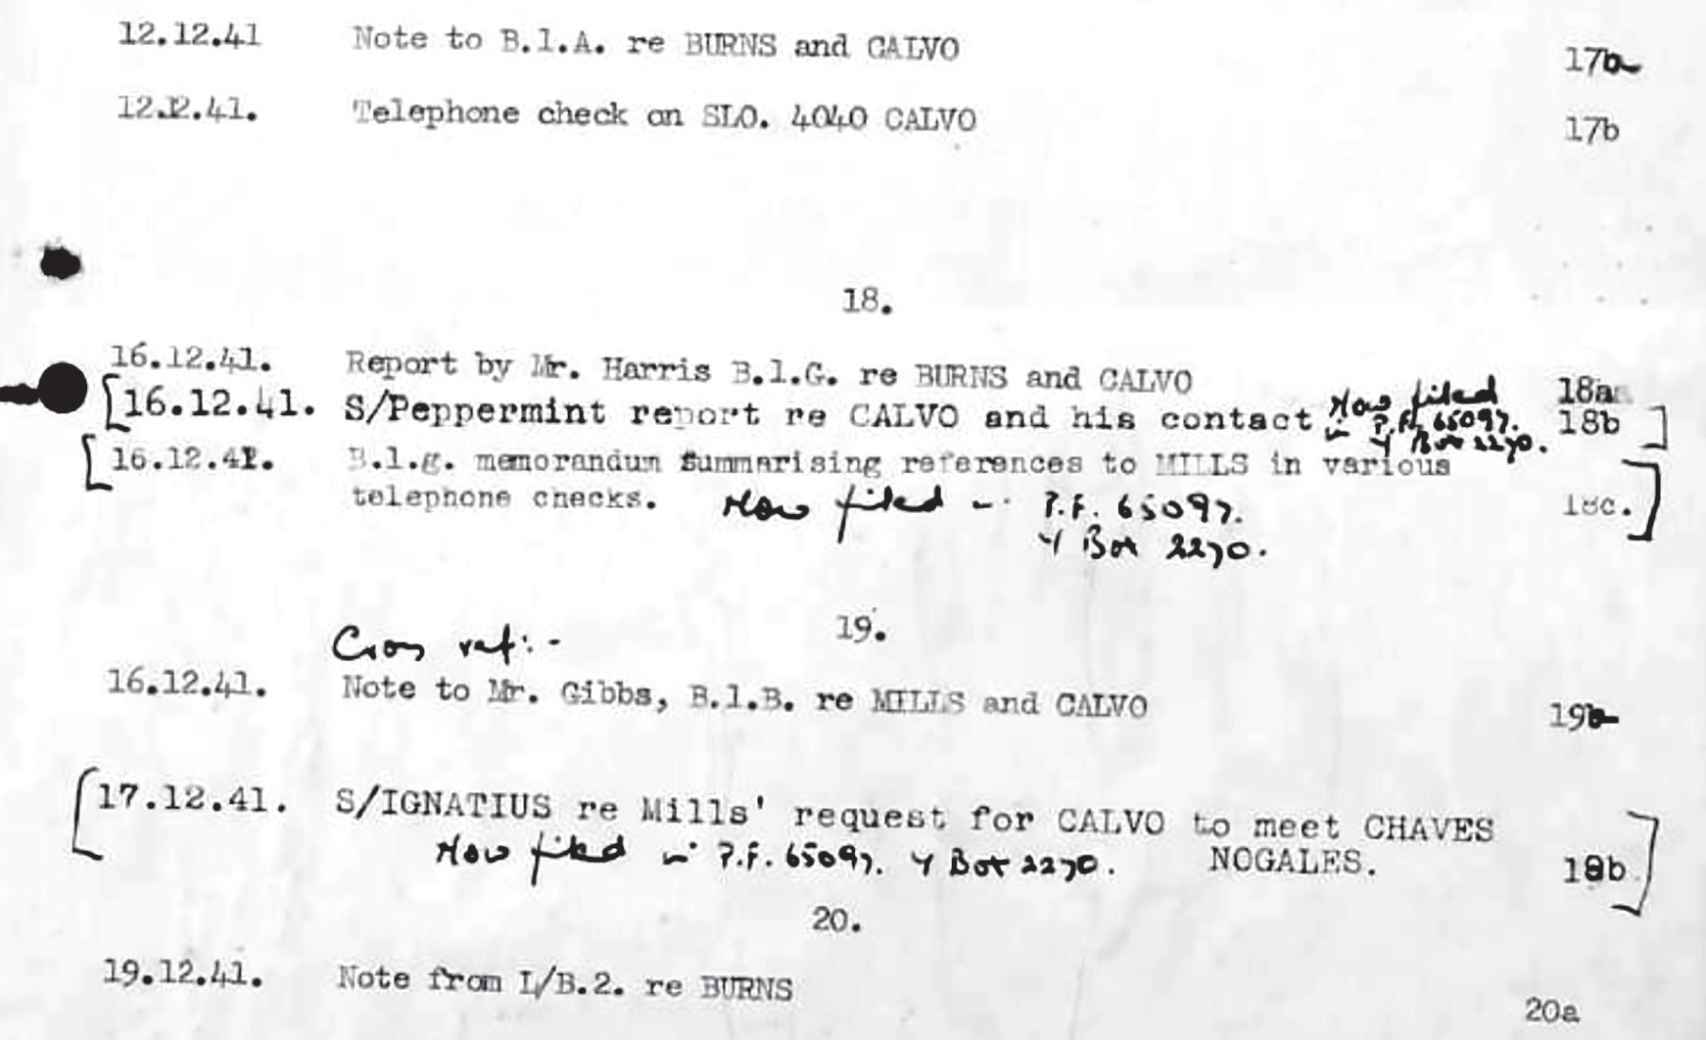 Registros de seguimiento y control telefónico durante diciembre de 1941 a Luis Calvo.